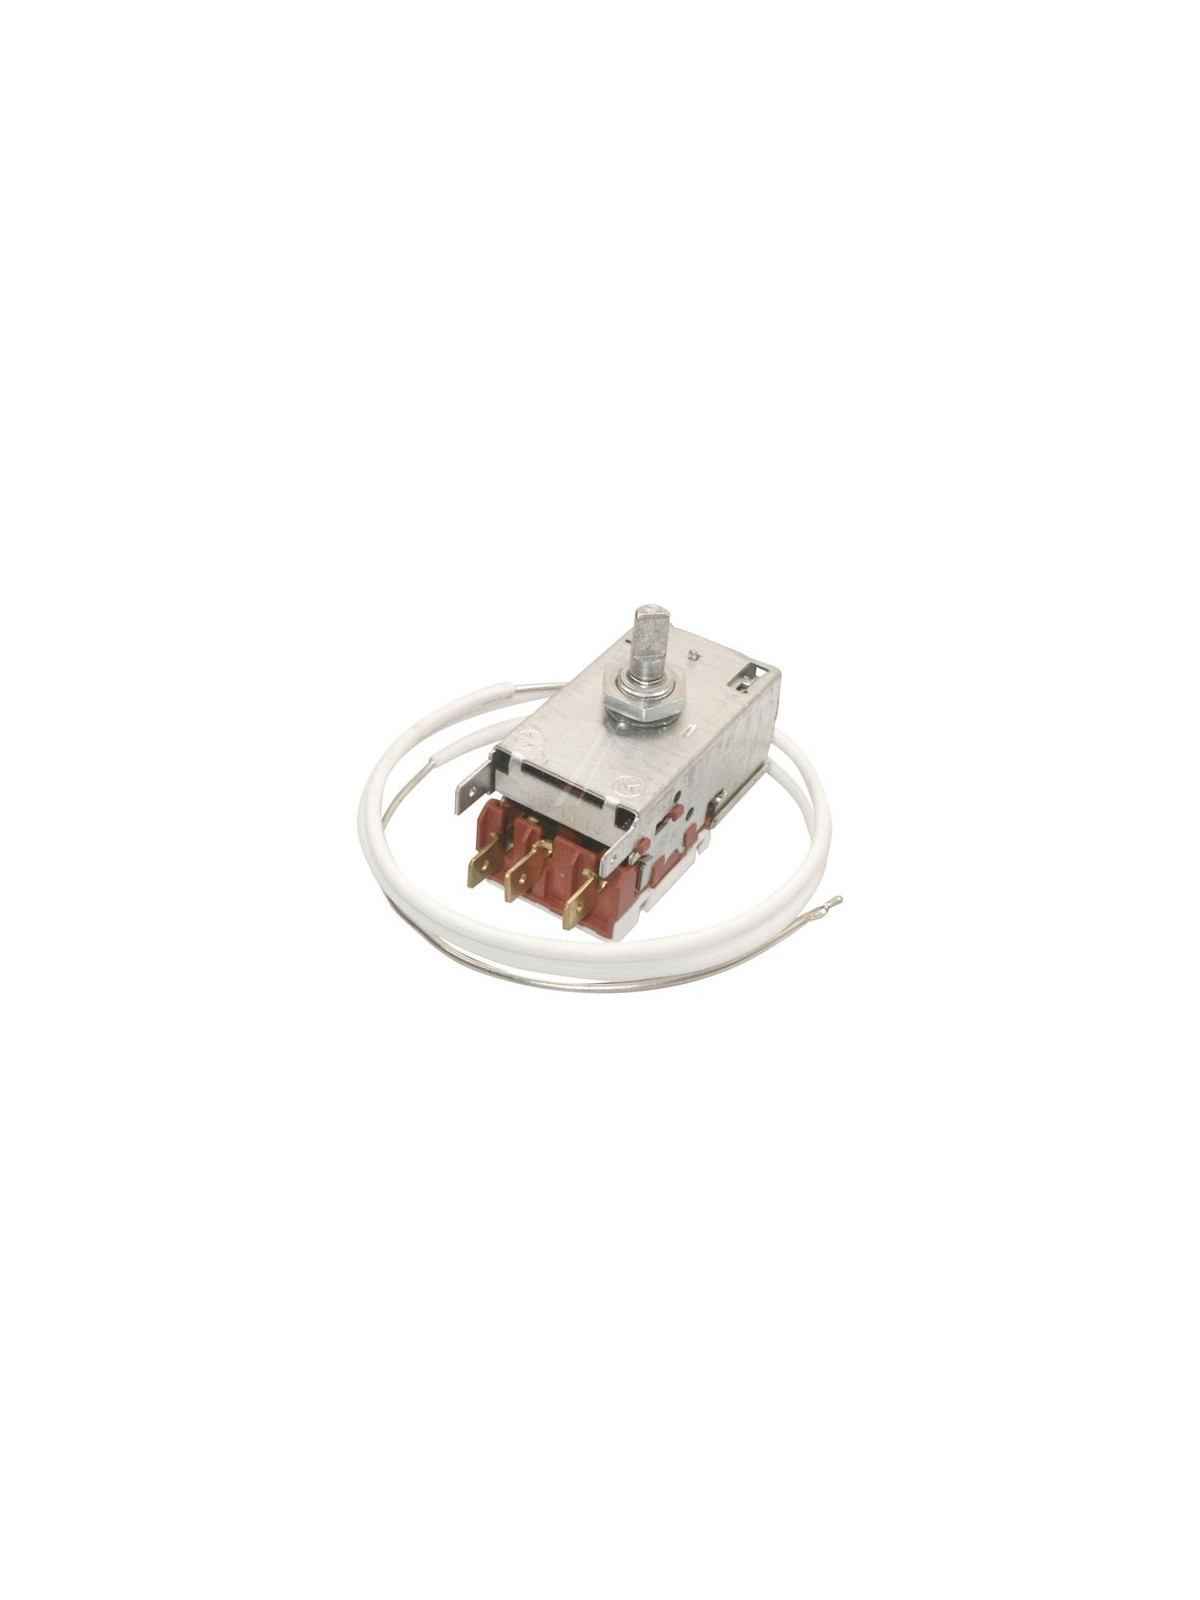 Thermostat Indesit GSE160 / Ariston EMC155XEU - Réfrigérateur